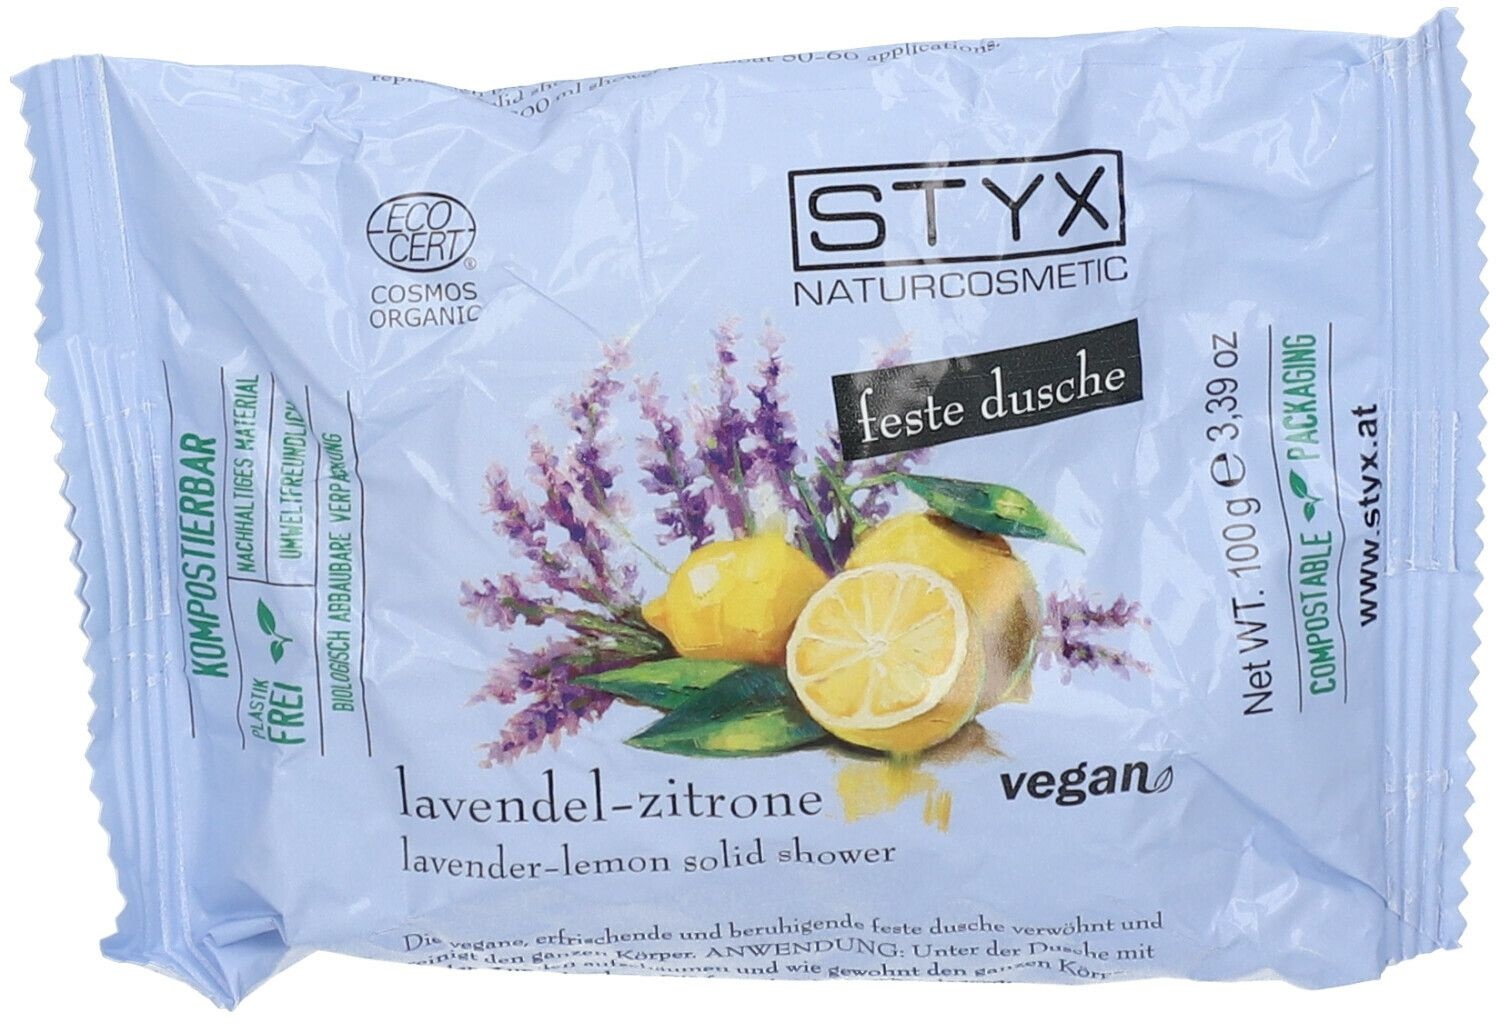 Styx feste dusche lavendel-zitrone